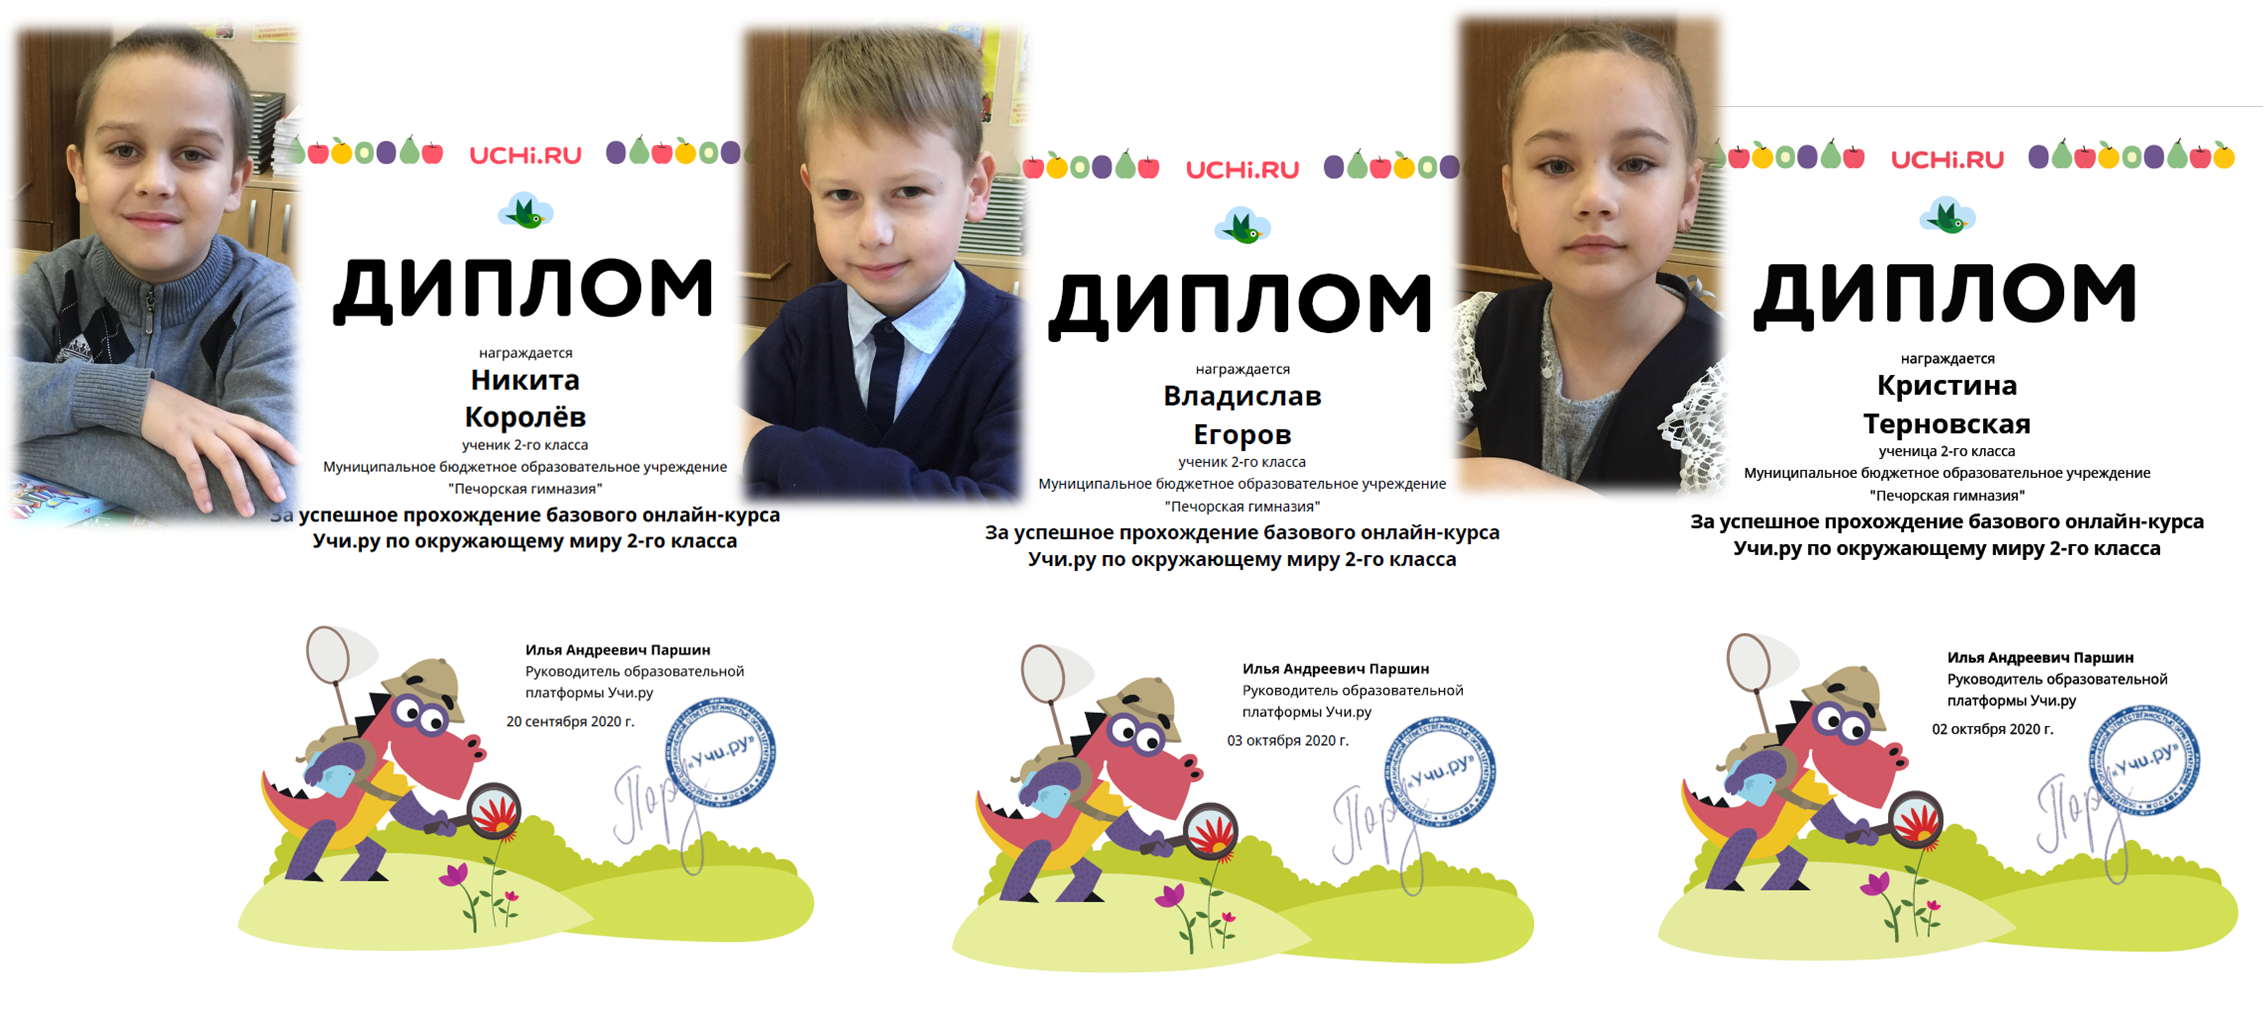 Olympiads uchi ru students